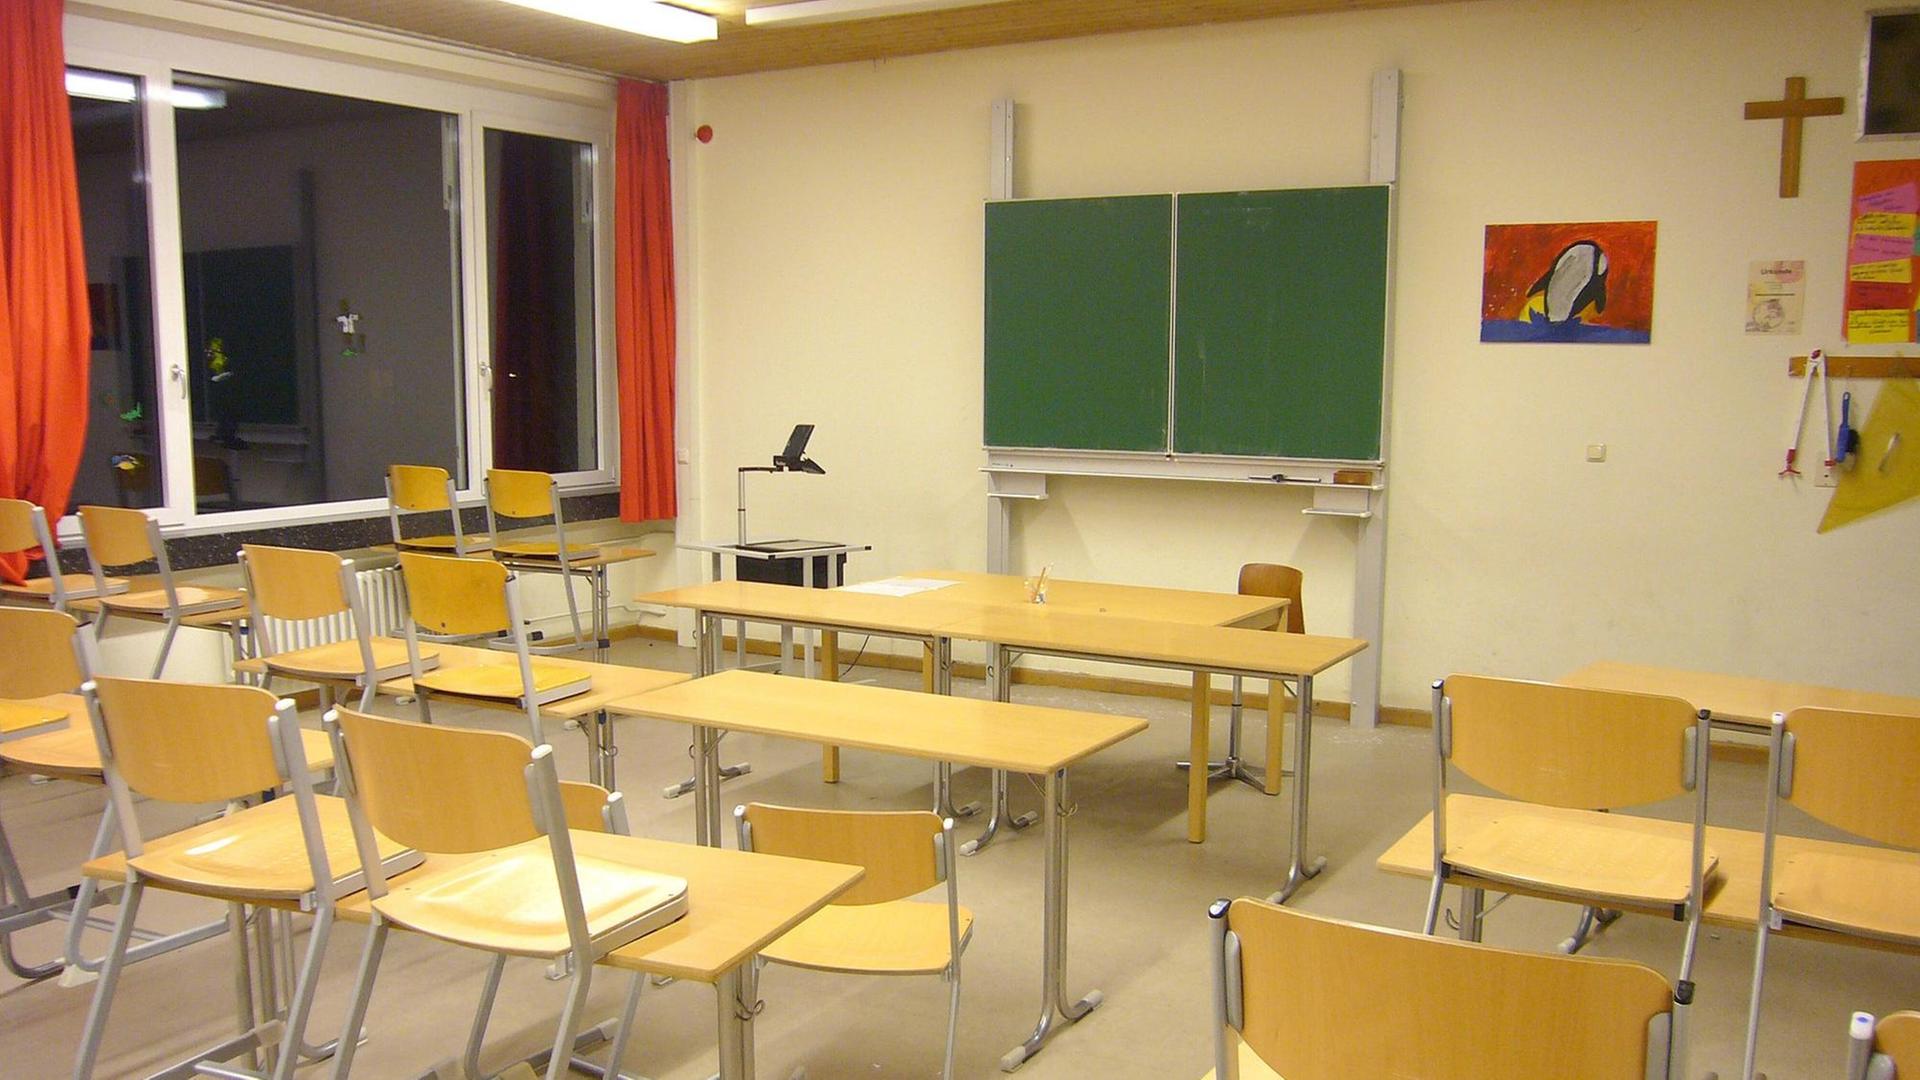 Das Foto zeigt leere Stuhl-Reihen in einem Klassenzimmer.